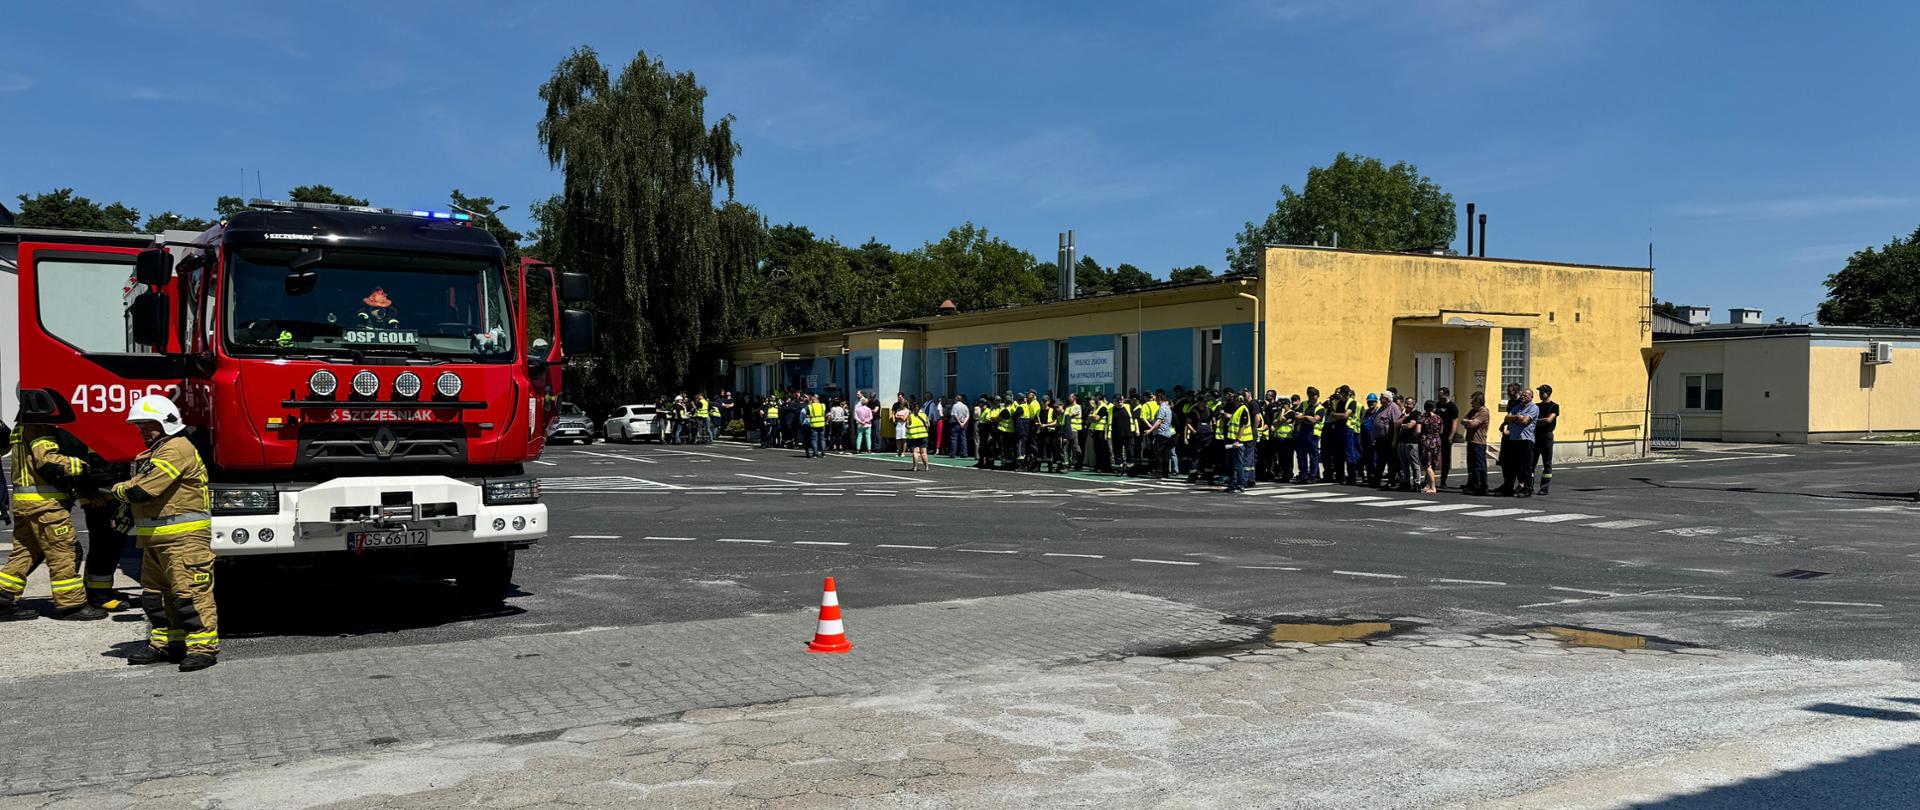 Z lewej strony zdjęcia stoi pojazd pożarniczy. W prawej części stoją wszyscy pracownicy zakładu, którzy zostali ewakuowani z budynku.